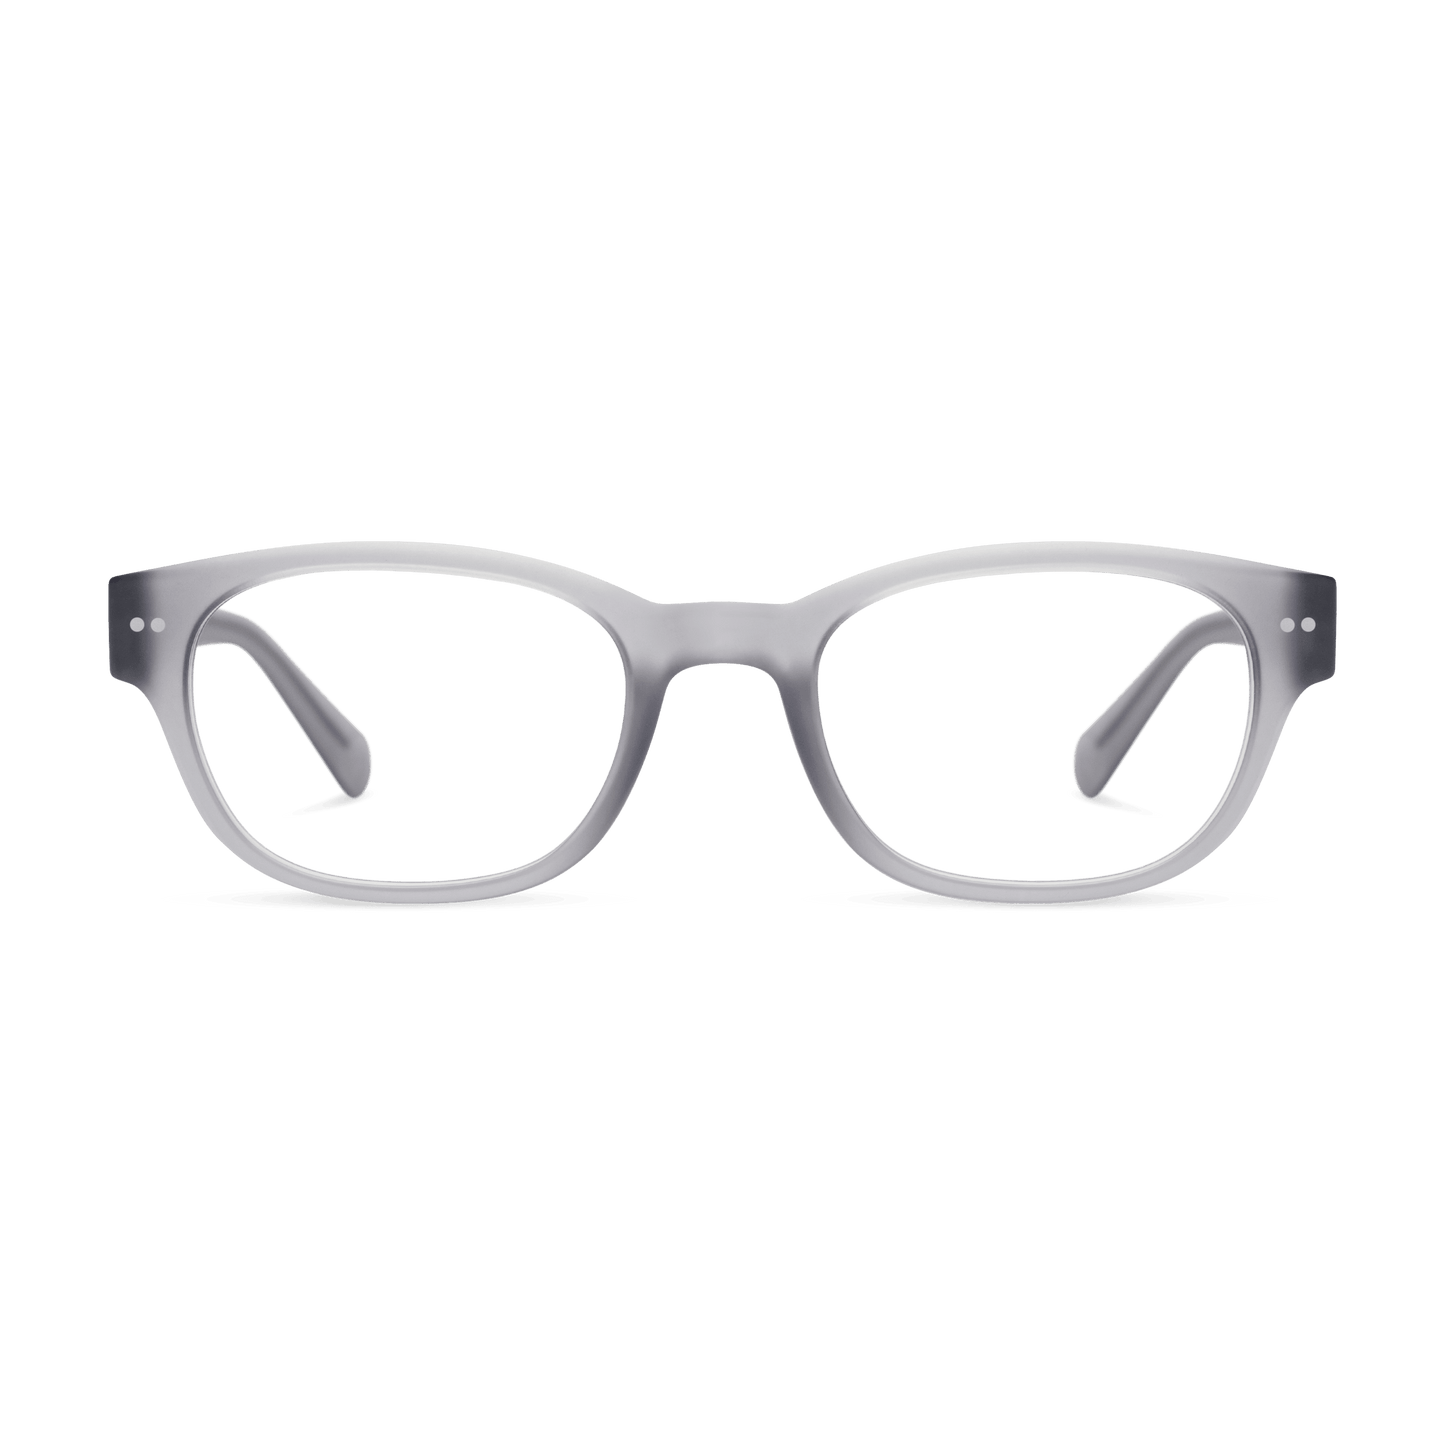 Bond Readers Eyewear LOOK OPTIC (Grey) +1.00 